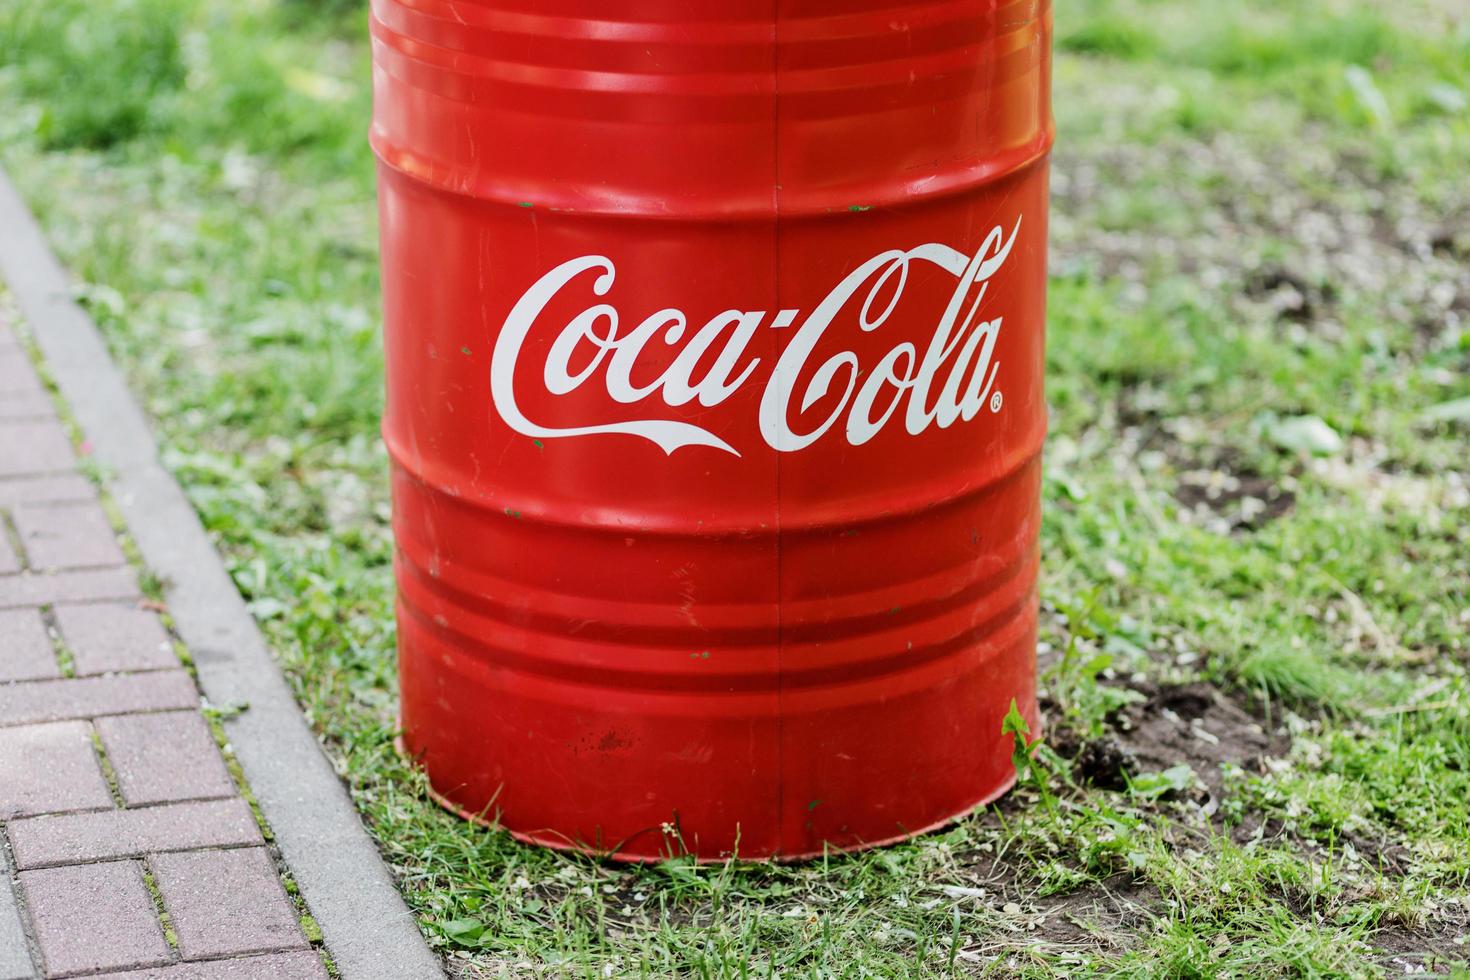 minsk, biélorussie, juin 2022 - baril rouge avec le logo coca cola photo